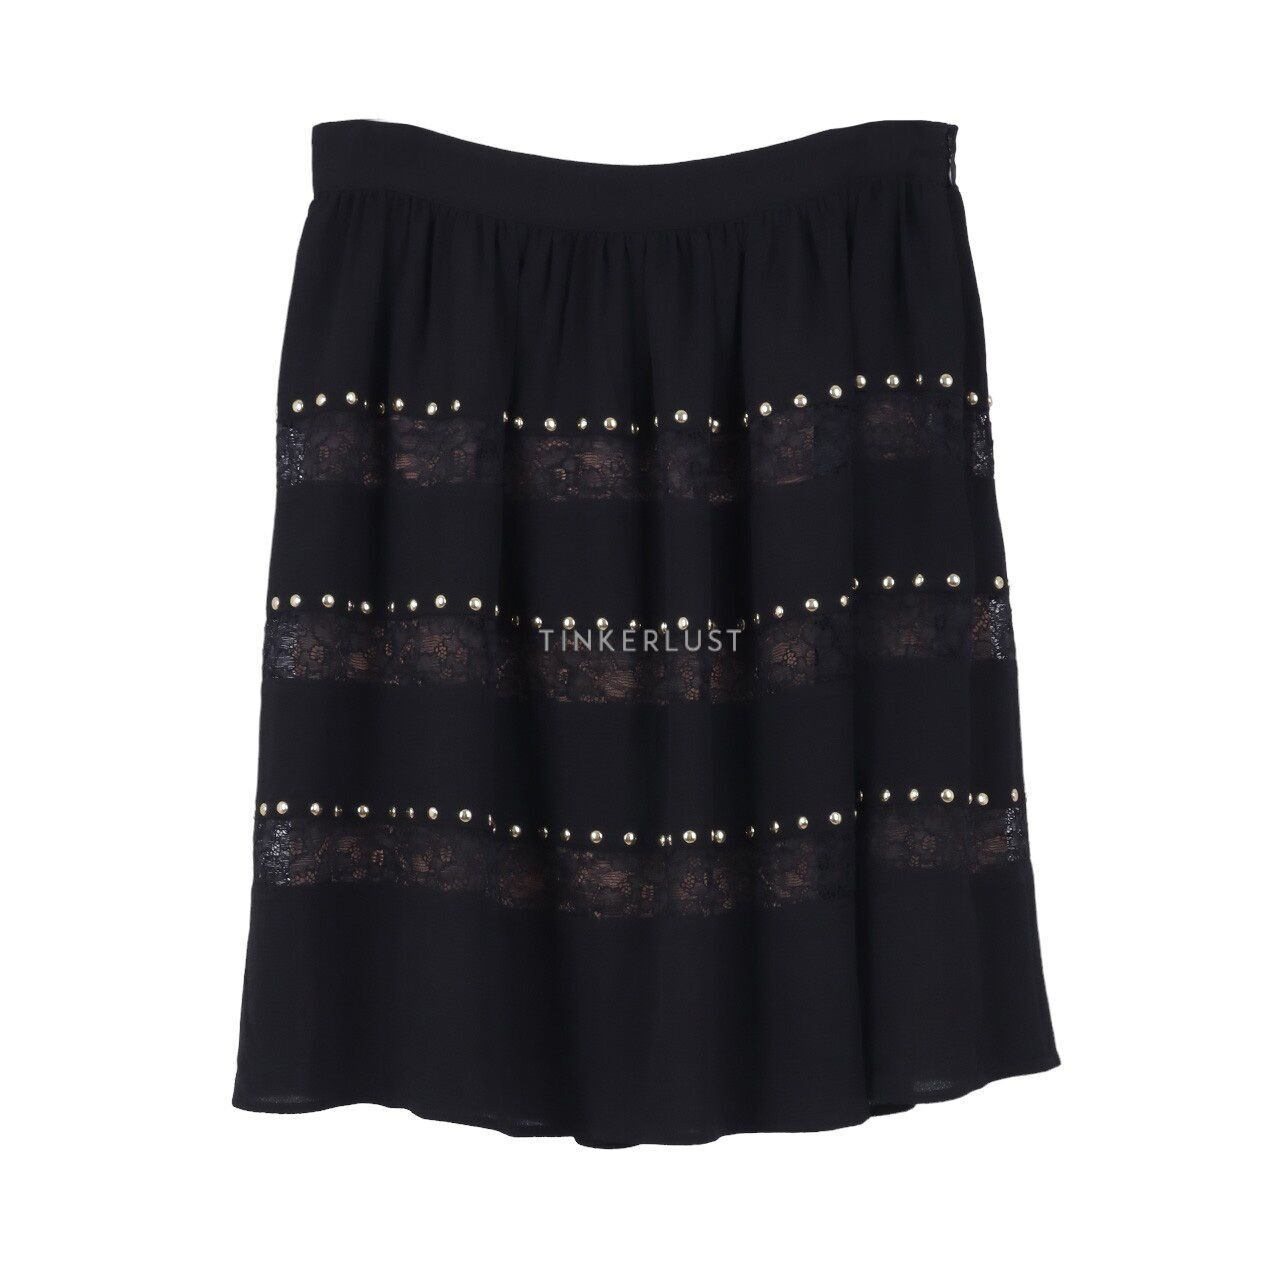 Michael Kors Crepe Embellishment Black Skirt